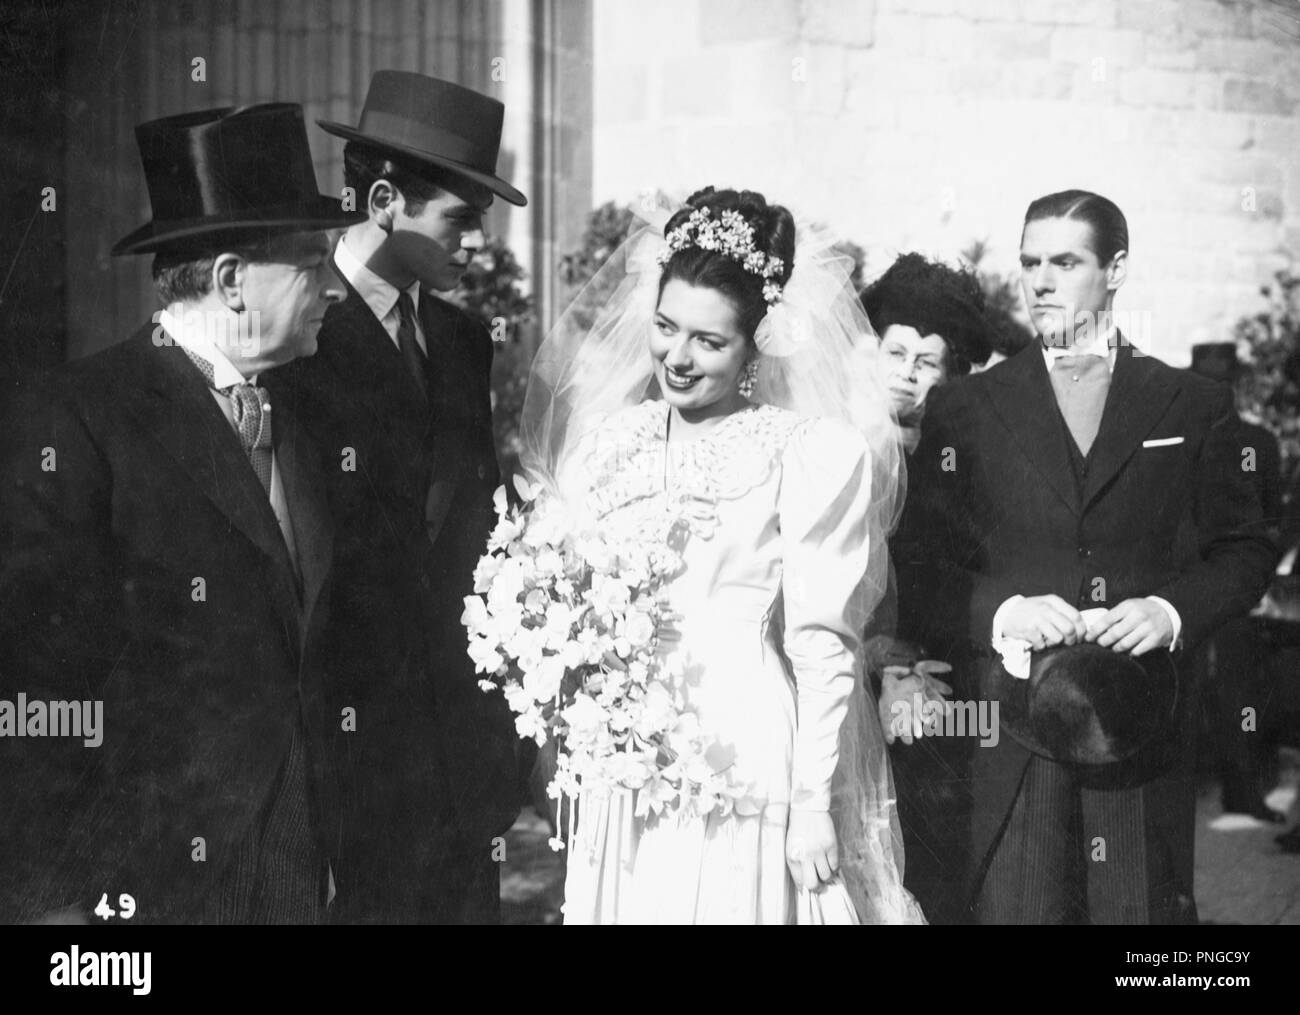 Original film title: ORO Y MARFIL. English title: ORO Y MARFIL. Year: 1947. Director: GONZALO DELGRAS. Stars: MARIO CABRE; LEONOR MARIA. Credit: HIDALGUIA FILMS / Album Stock Photo